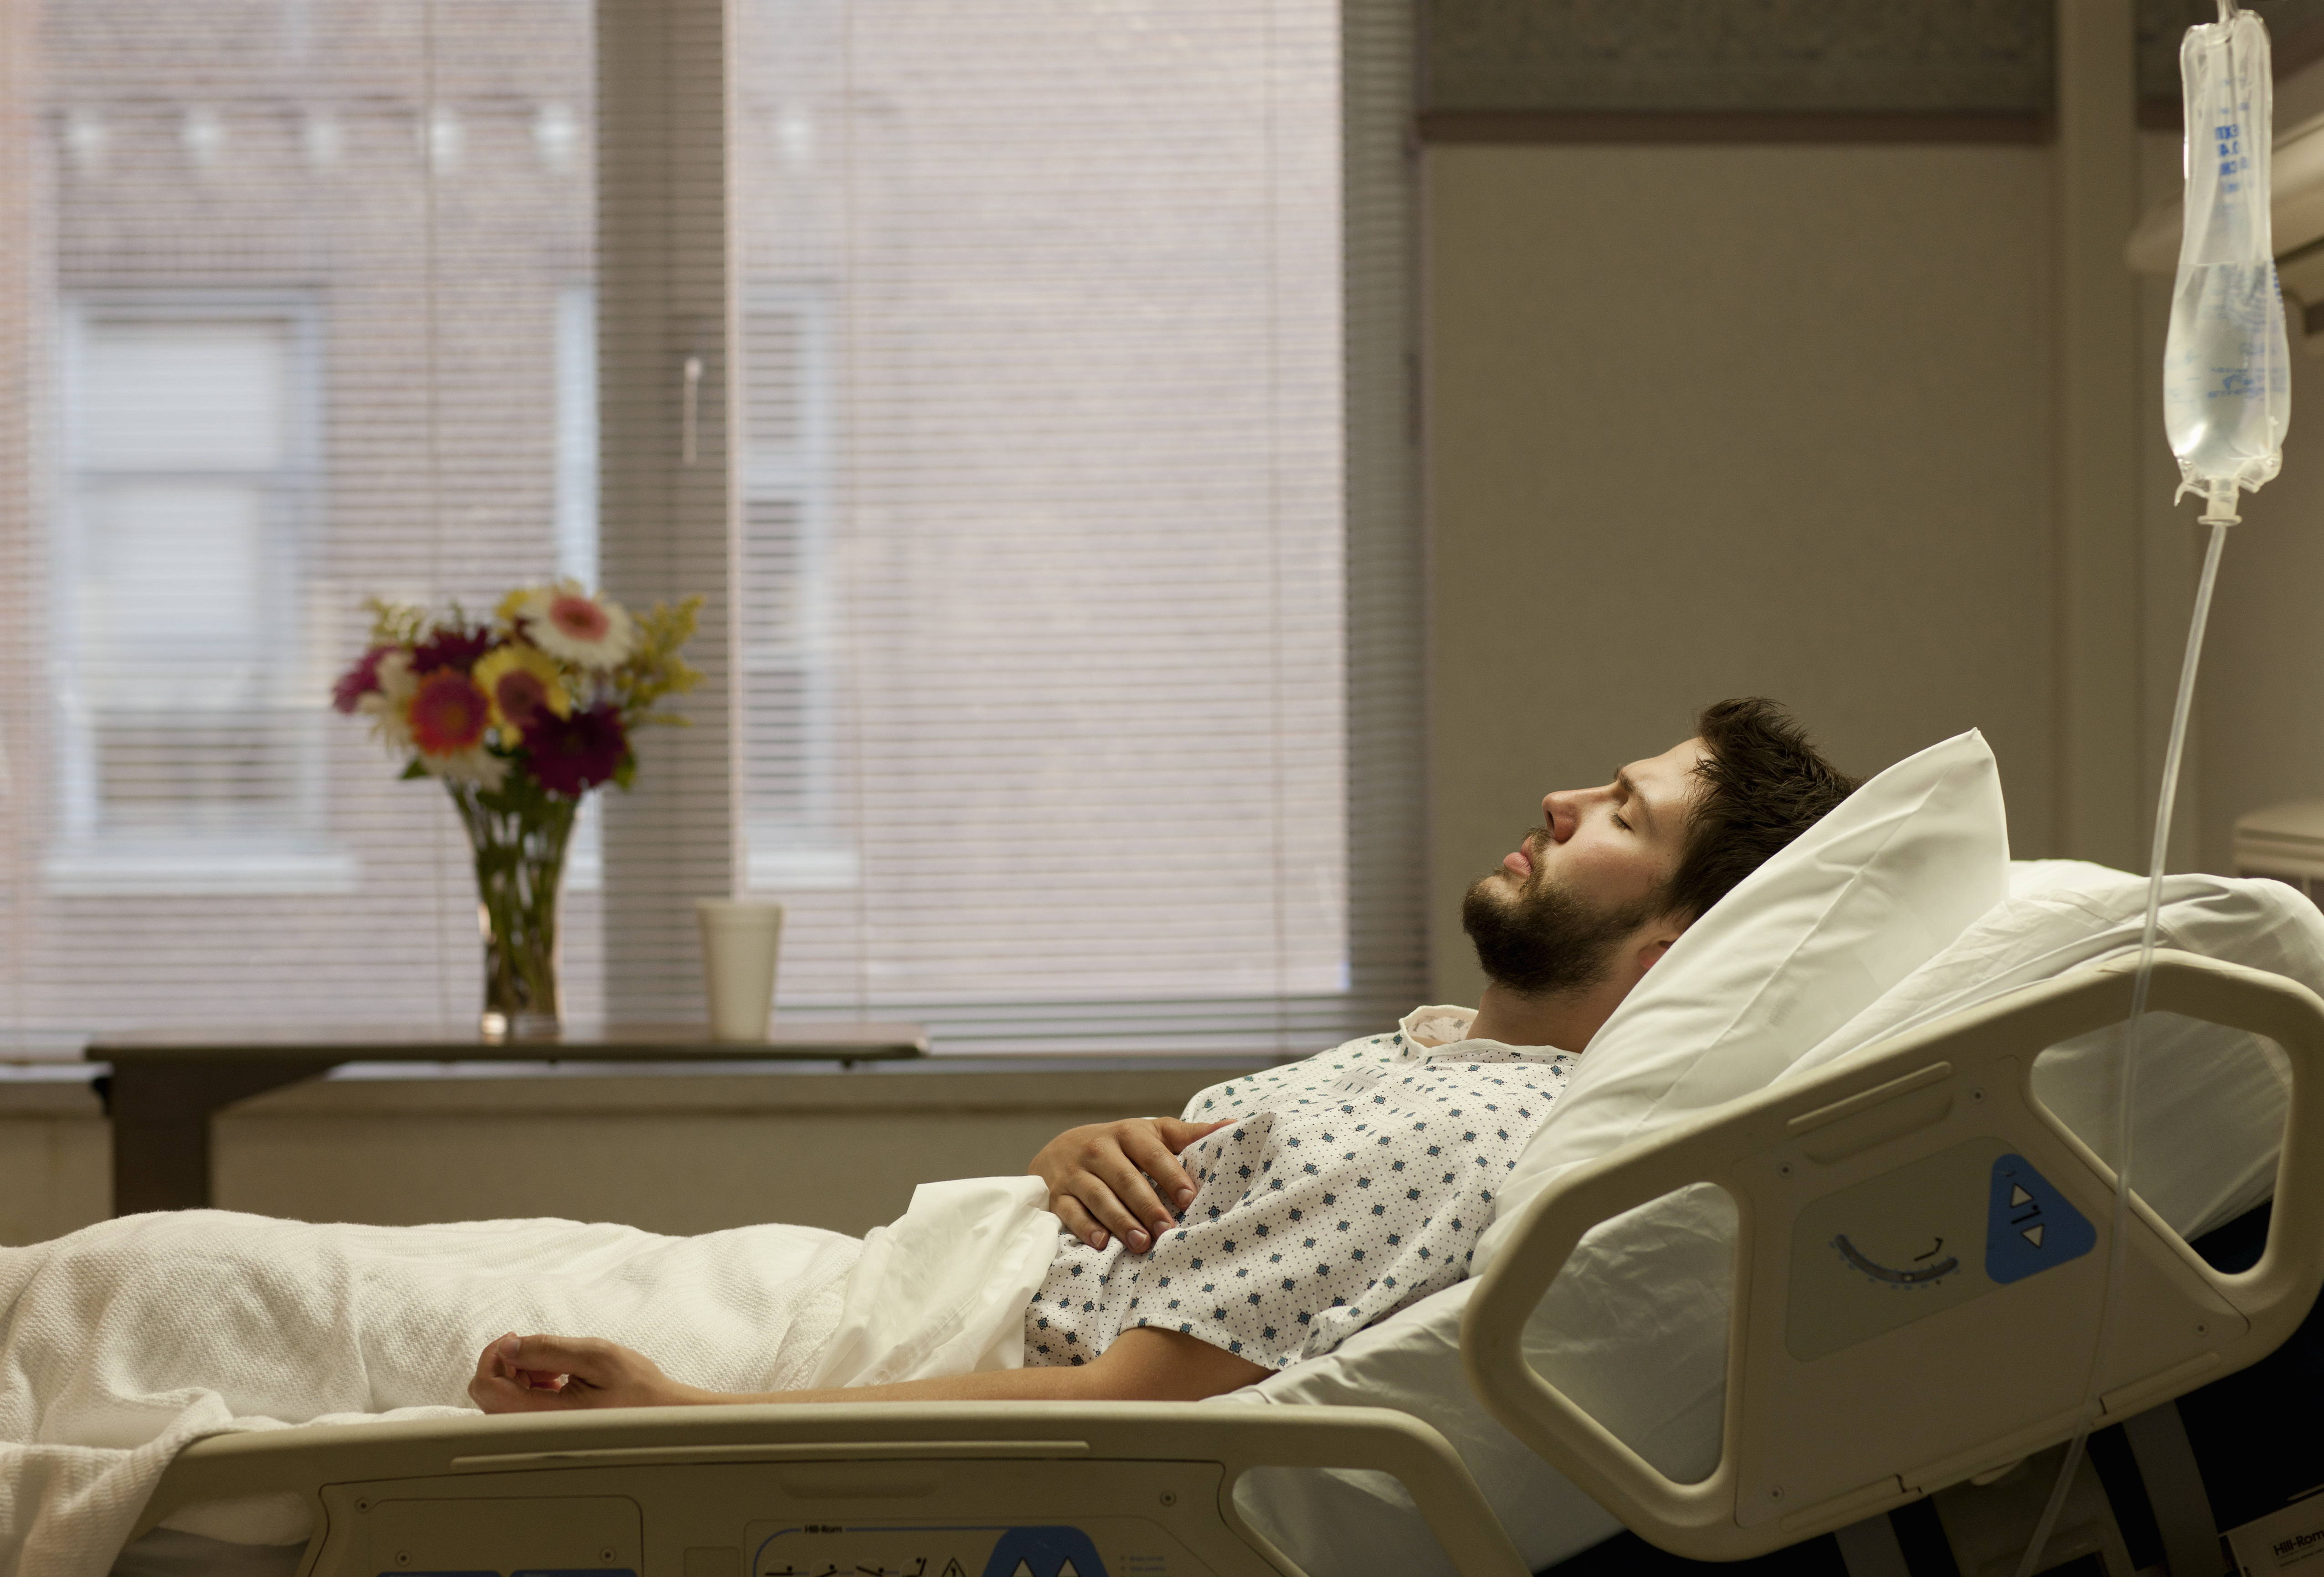 Un homme allongé dans un lit d'hôpital | Source : Getty Images